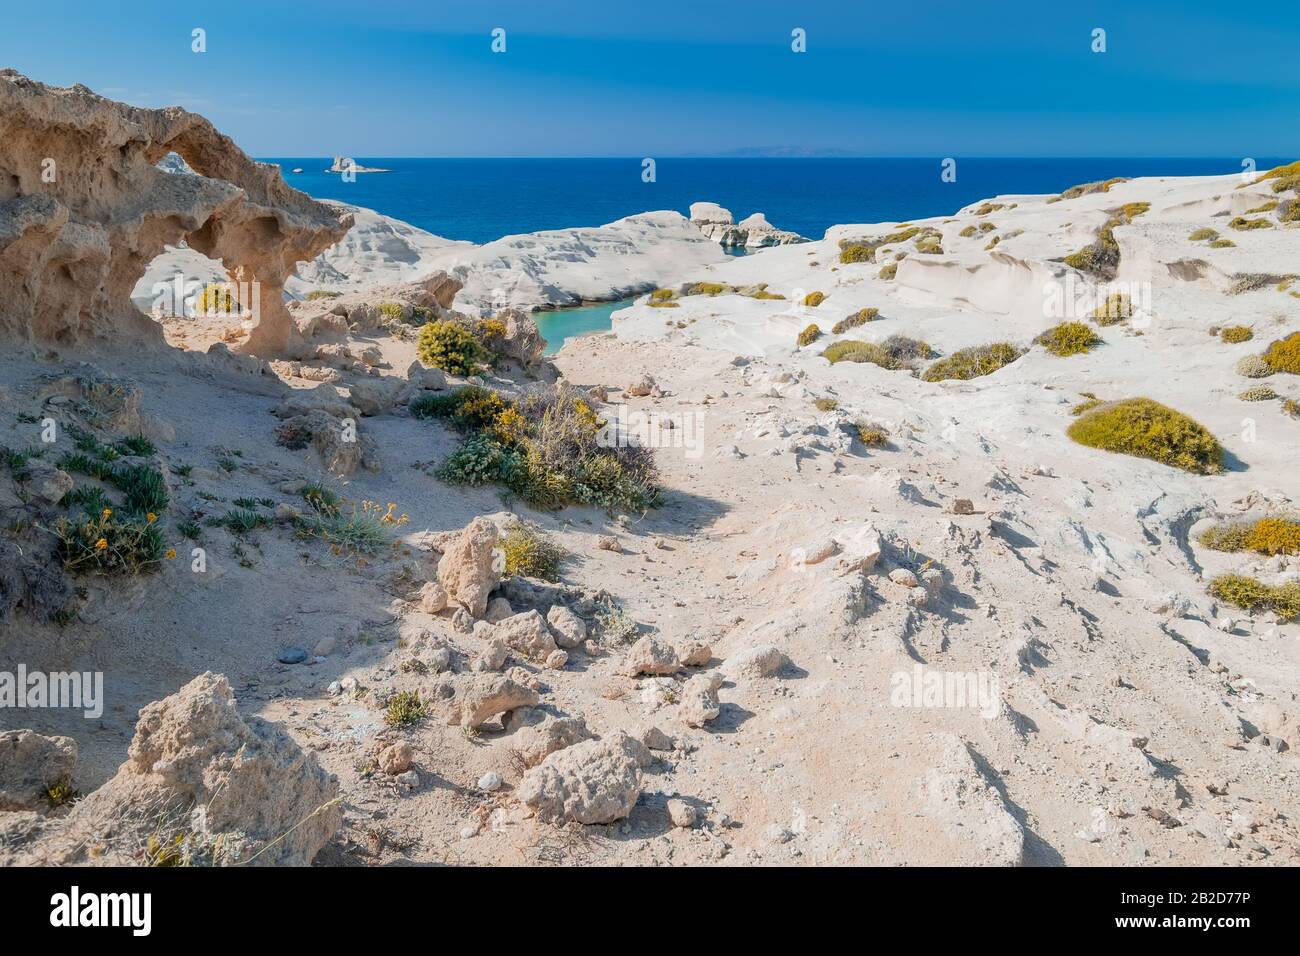 Fantastische Landschaft mit weißen vulkanischen Felsen am Sarakiniko Strand. Türkisfarbenes ägeisches Meer und blauer sonniger Himmel. Einzigartige mediterrane Natur der Insel Milos, Stockfoto